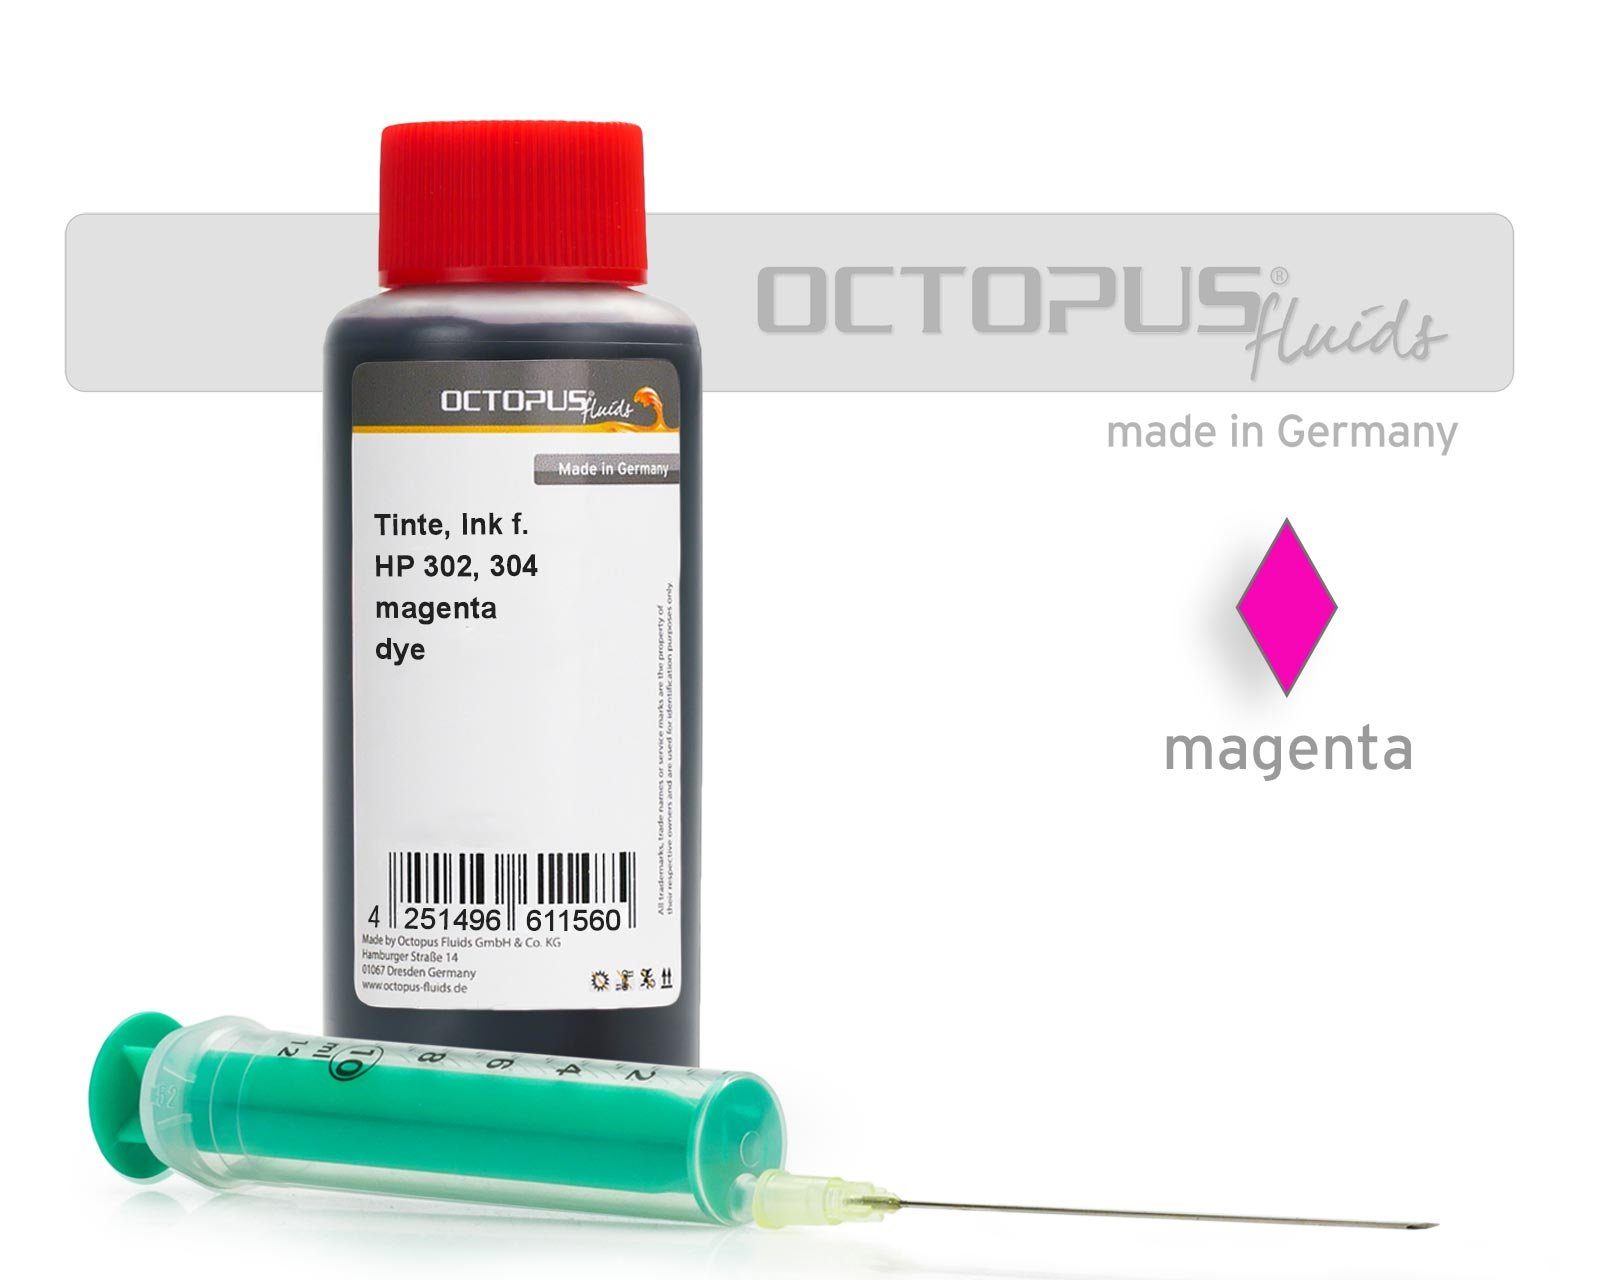 OCTOPUS Fluids HP, Ink syringe 100 magenta 302, with (für Nachfülltinte 304 1x for ml) HP